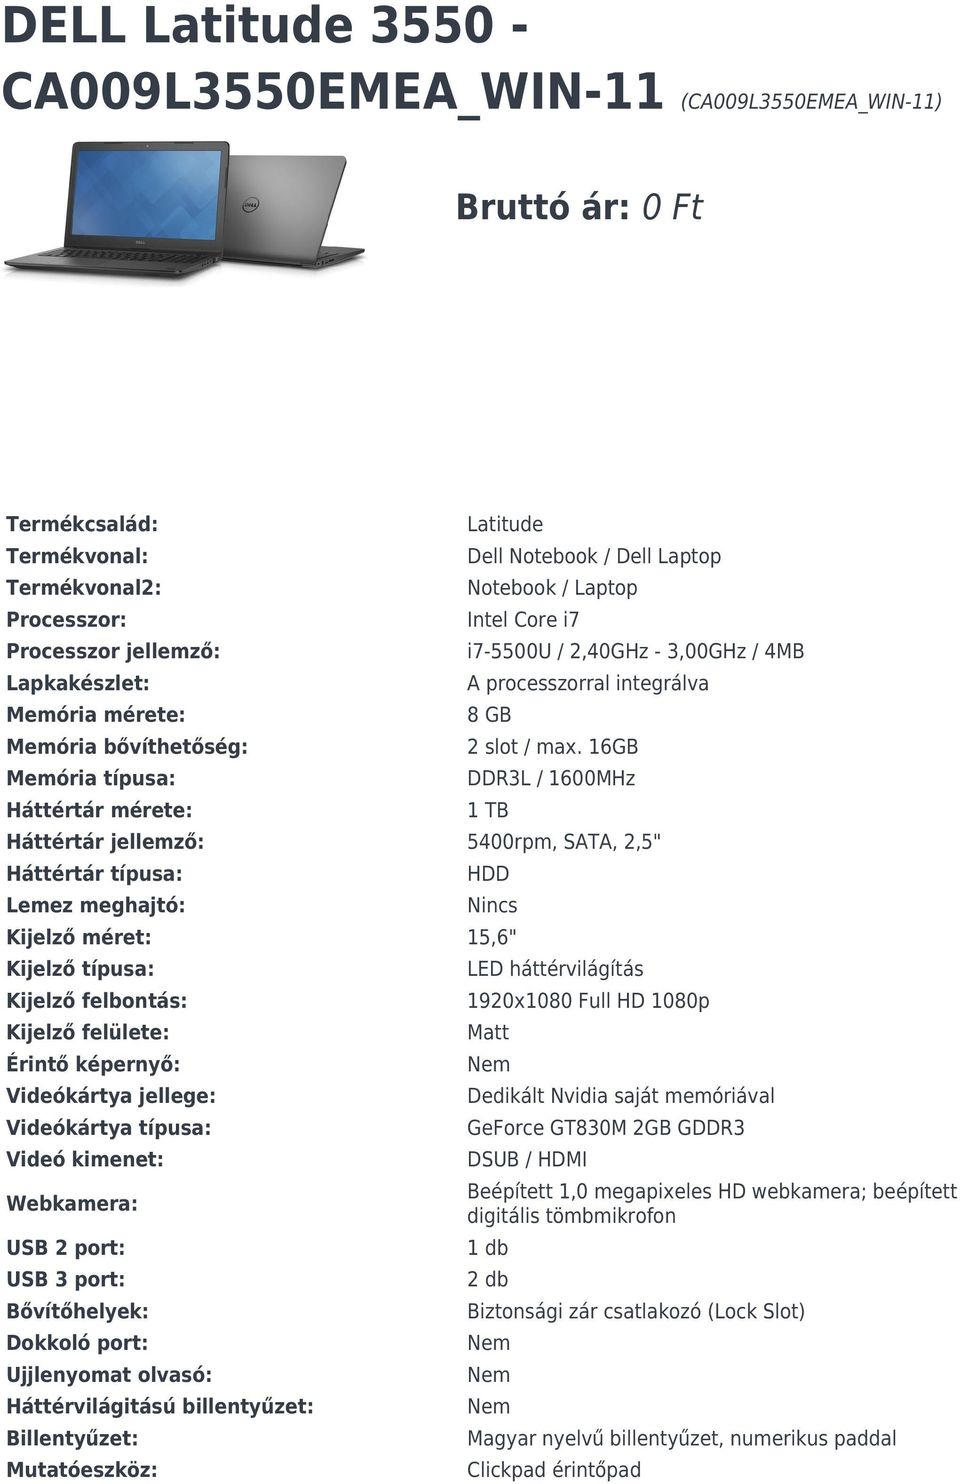 16GB DDR3L / 1600MHz 1 TB Háttértár jellemző: 5400rpm, SATA, 2,5" Háttértár típusa: Lemez meghajtó: HDD Nincs Kijelző méret: 15,6" Kijelző típusa: Kijelző felbontás: Kijelző felülete: Érintő